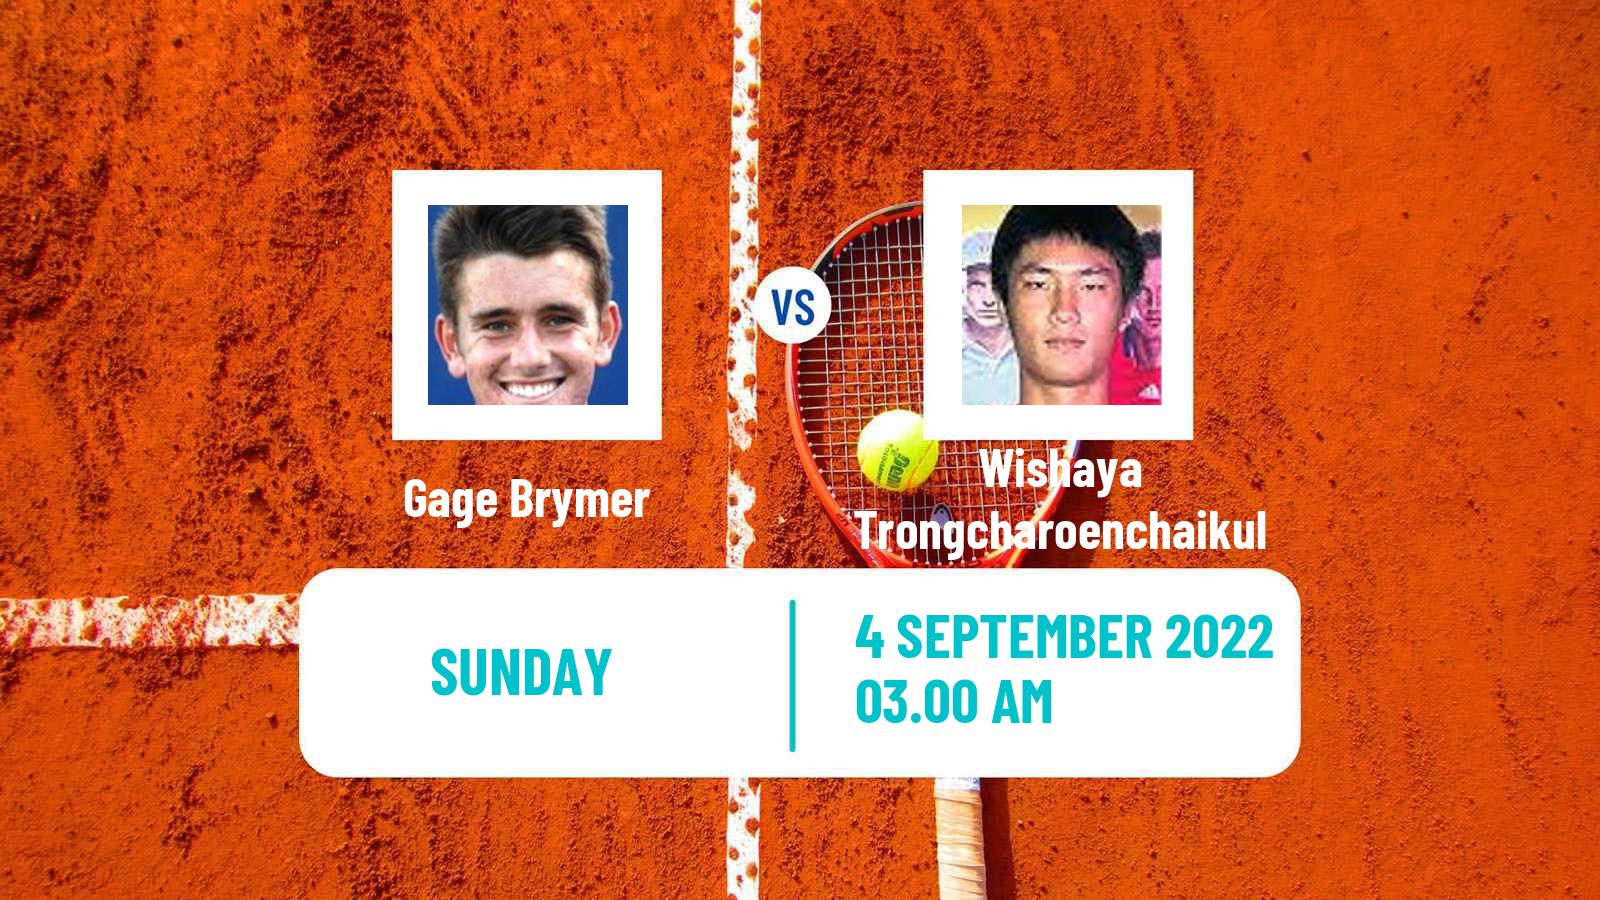 Tennis ATP Challenger Gage Brymer - Wishaya Trongcharoenchaikul